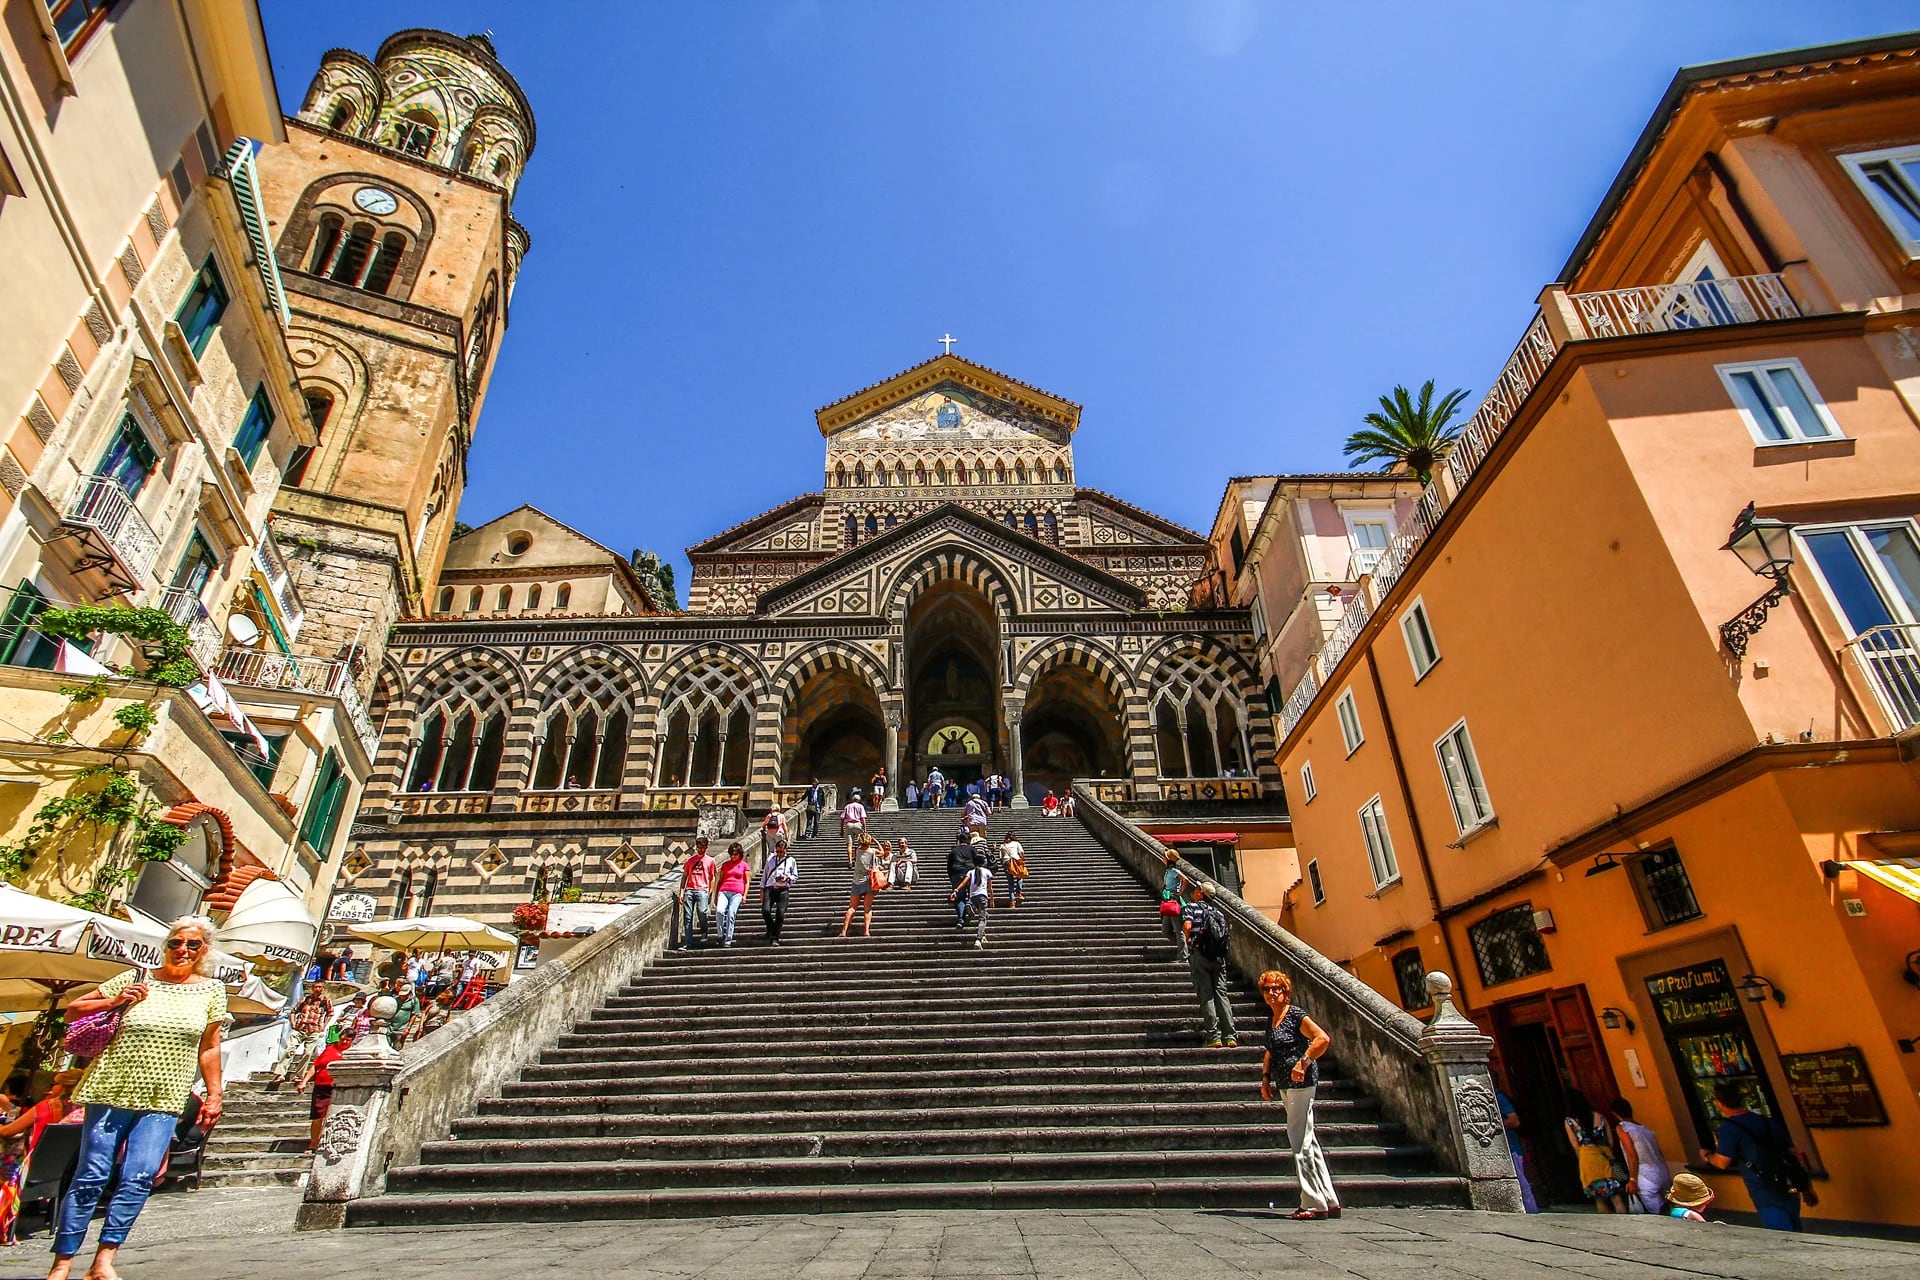 El corazón de Amalfi es la Piazza Duomo, llamada así por el Duomo di Sant’Andrea